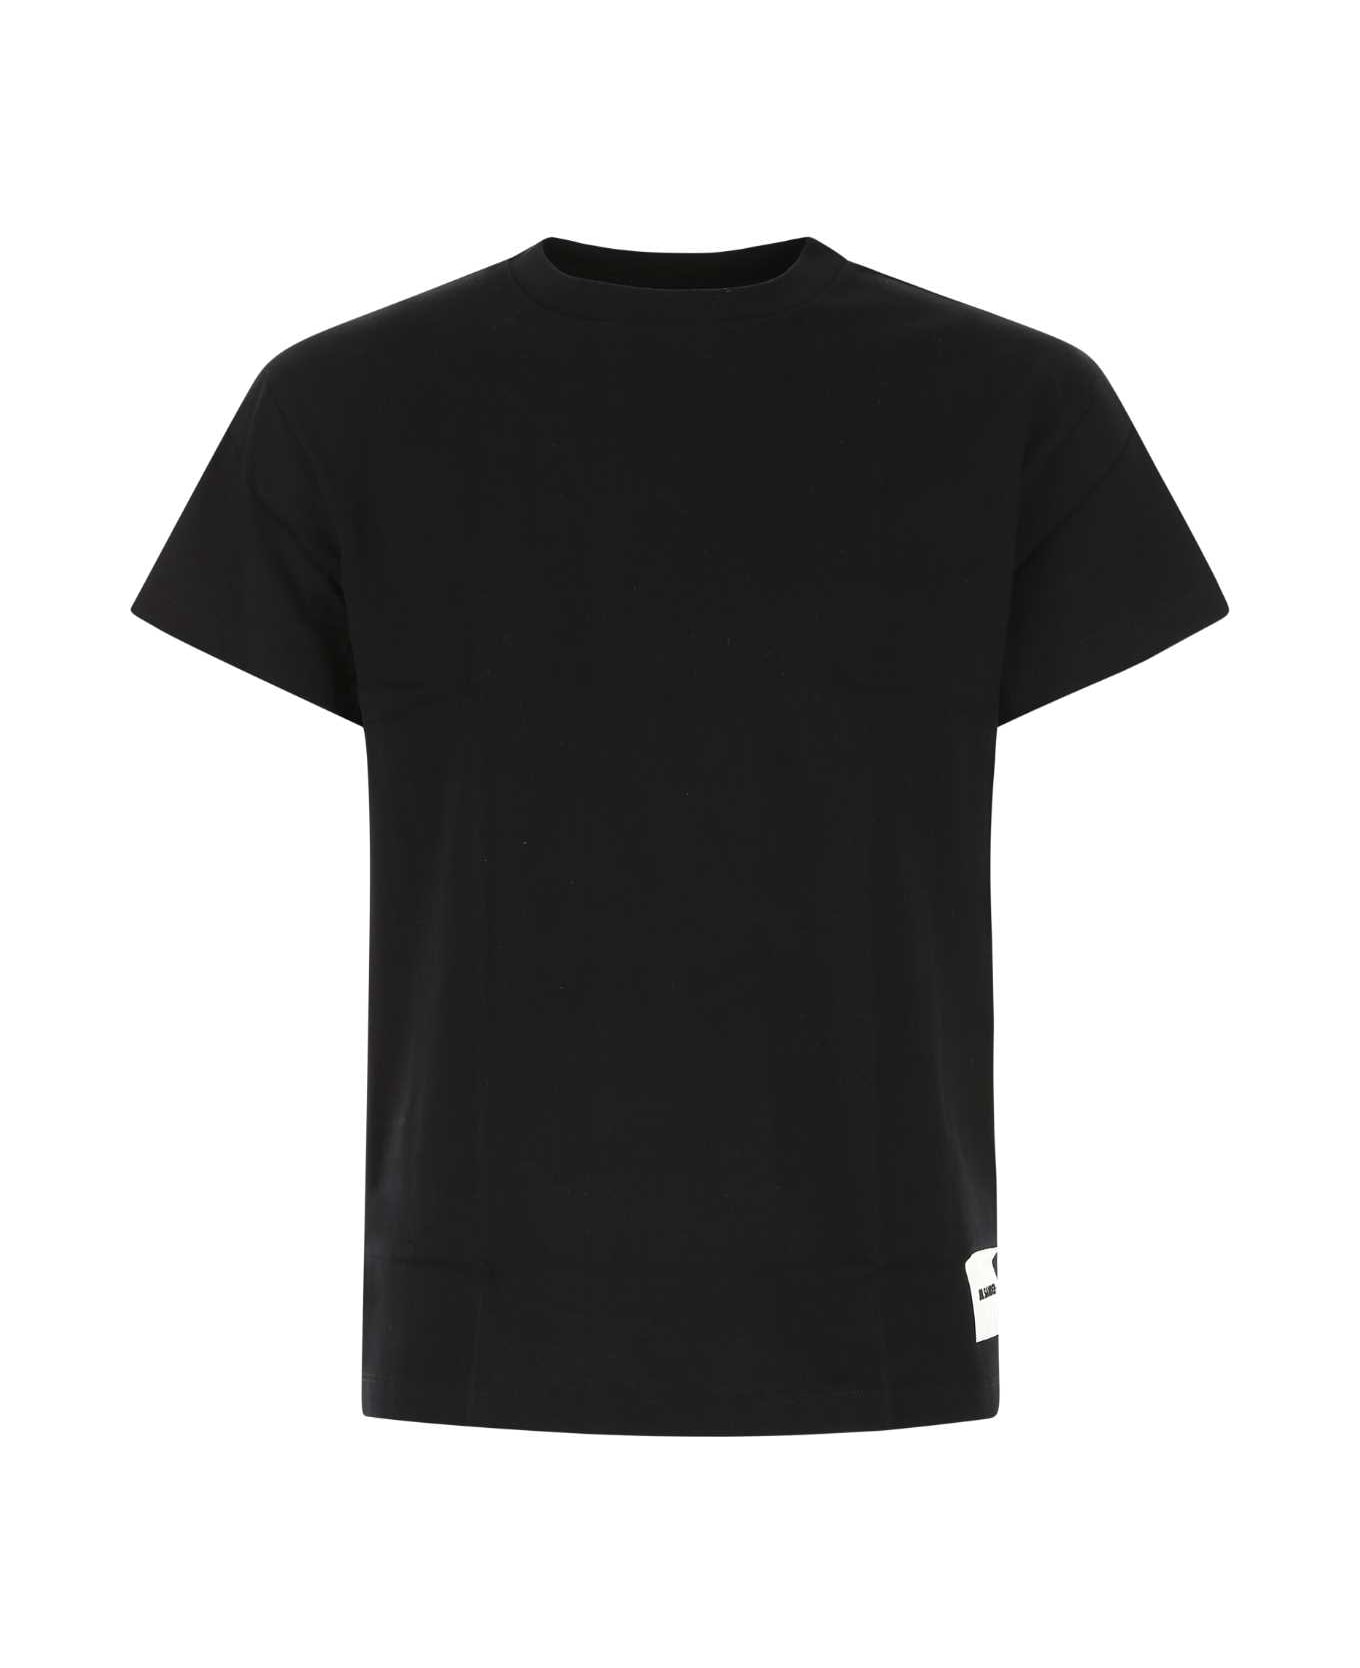 Jil Sander Black Cotton T-shirt Set - 001 シャツ